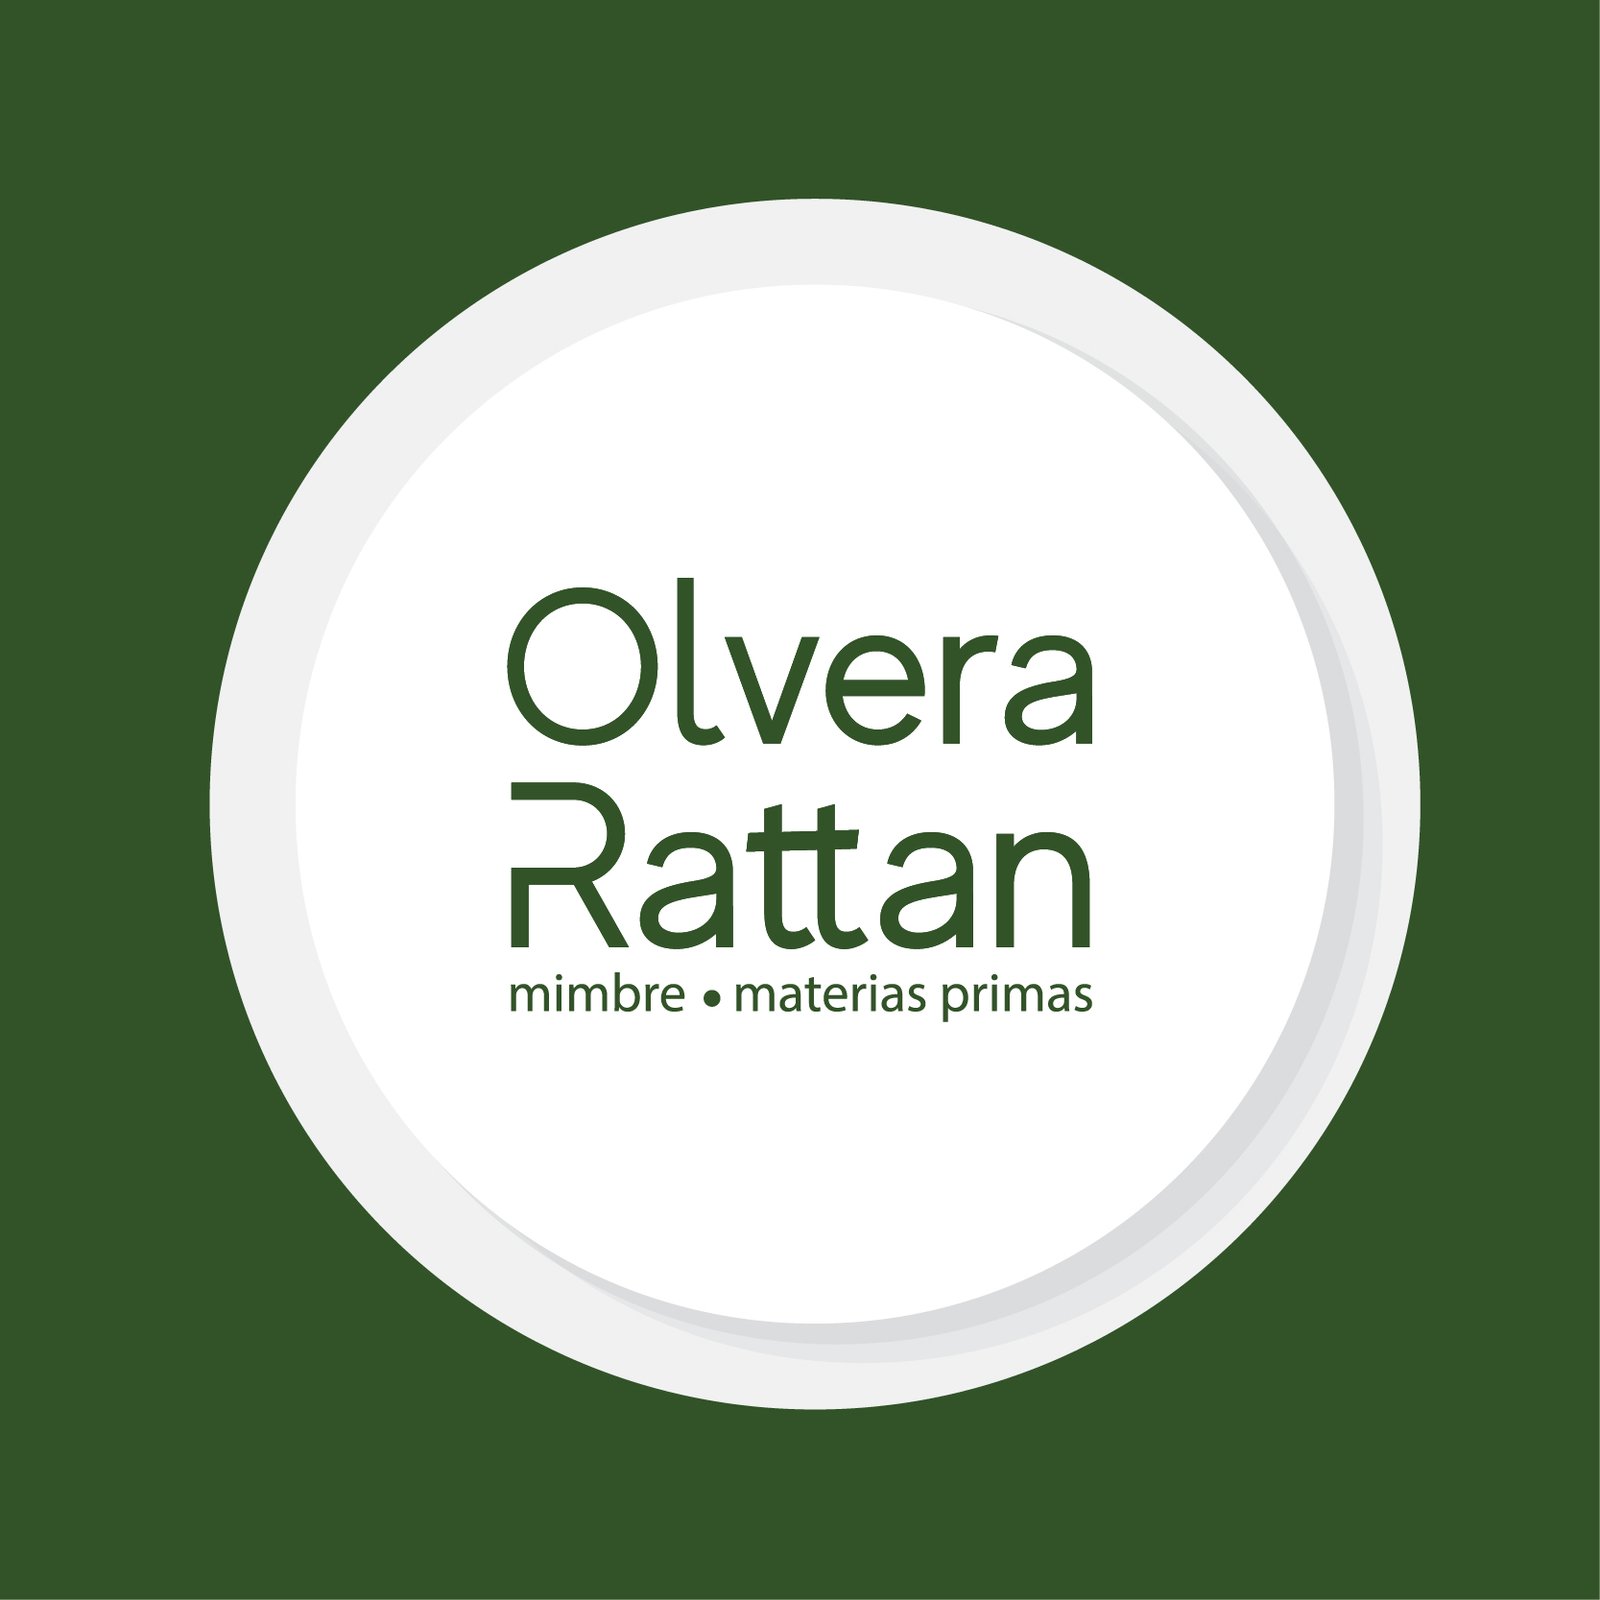 Mimbre natural - Olvera Rattan  Importación y distribución de Rattán  natural, sintético y otras fibras